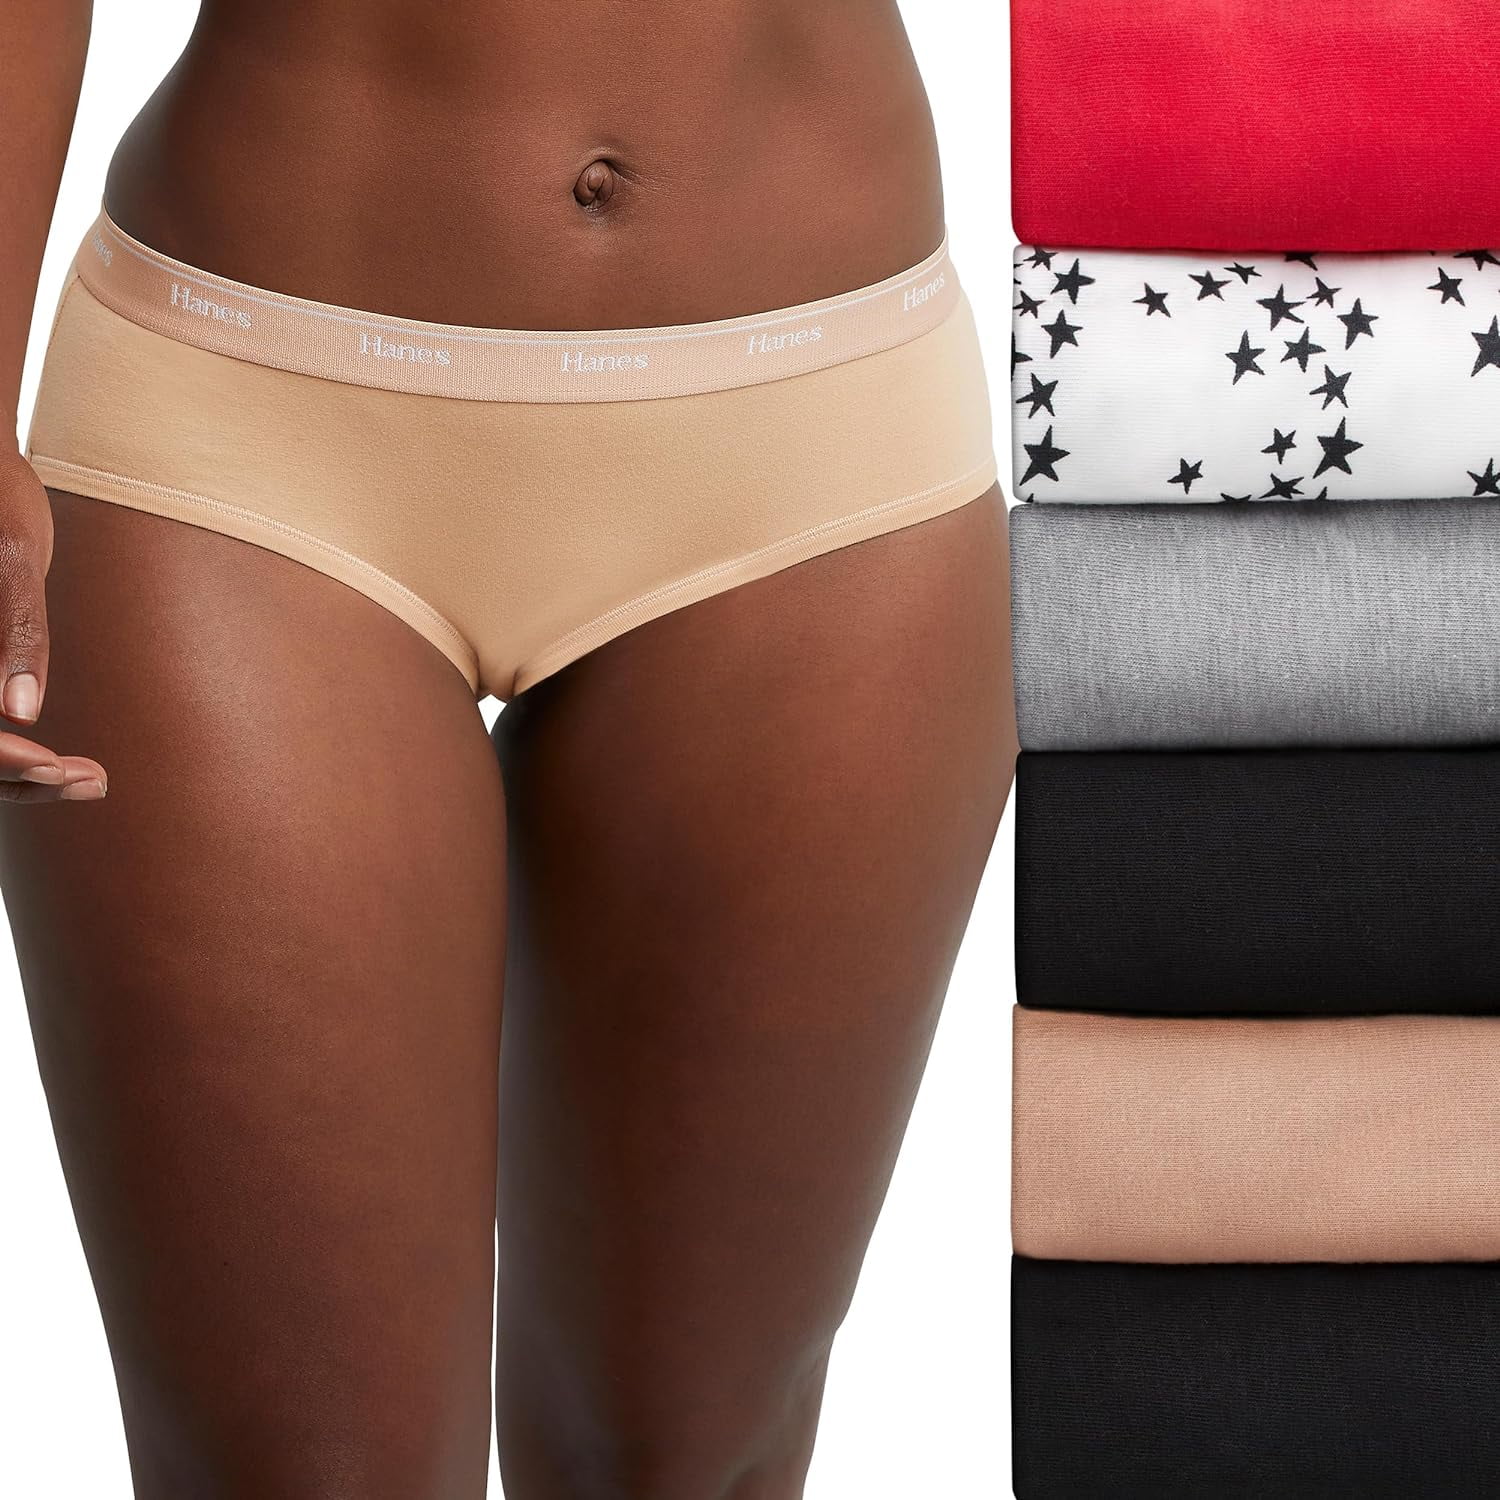 Hanes Originals Women's Hipster Underwear, Breathable Cotton